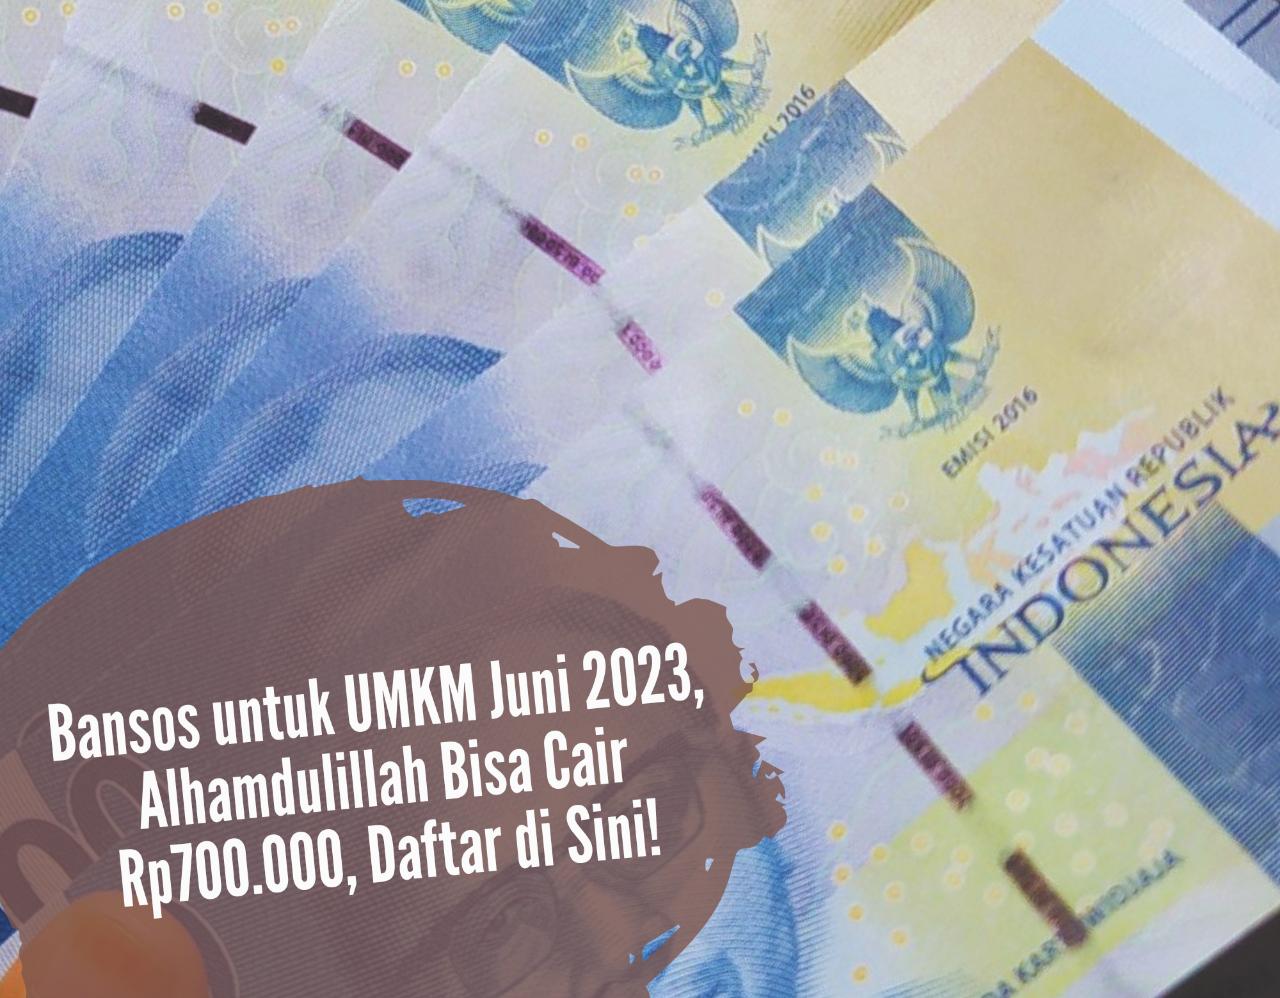 Auto Masuk Rekening! Bansos untuk UMKM Juni 2023, Alhamdulillah Bisa Cair Rp700.000, Daftar di Sini